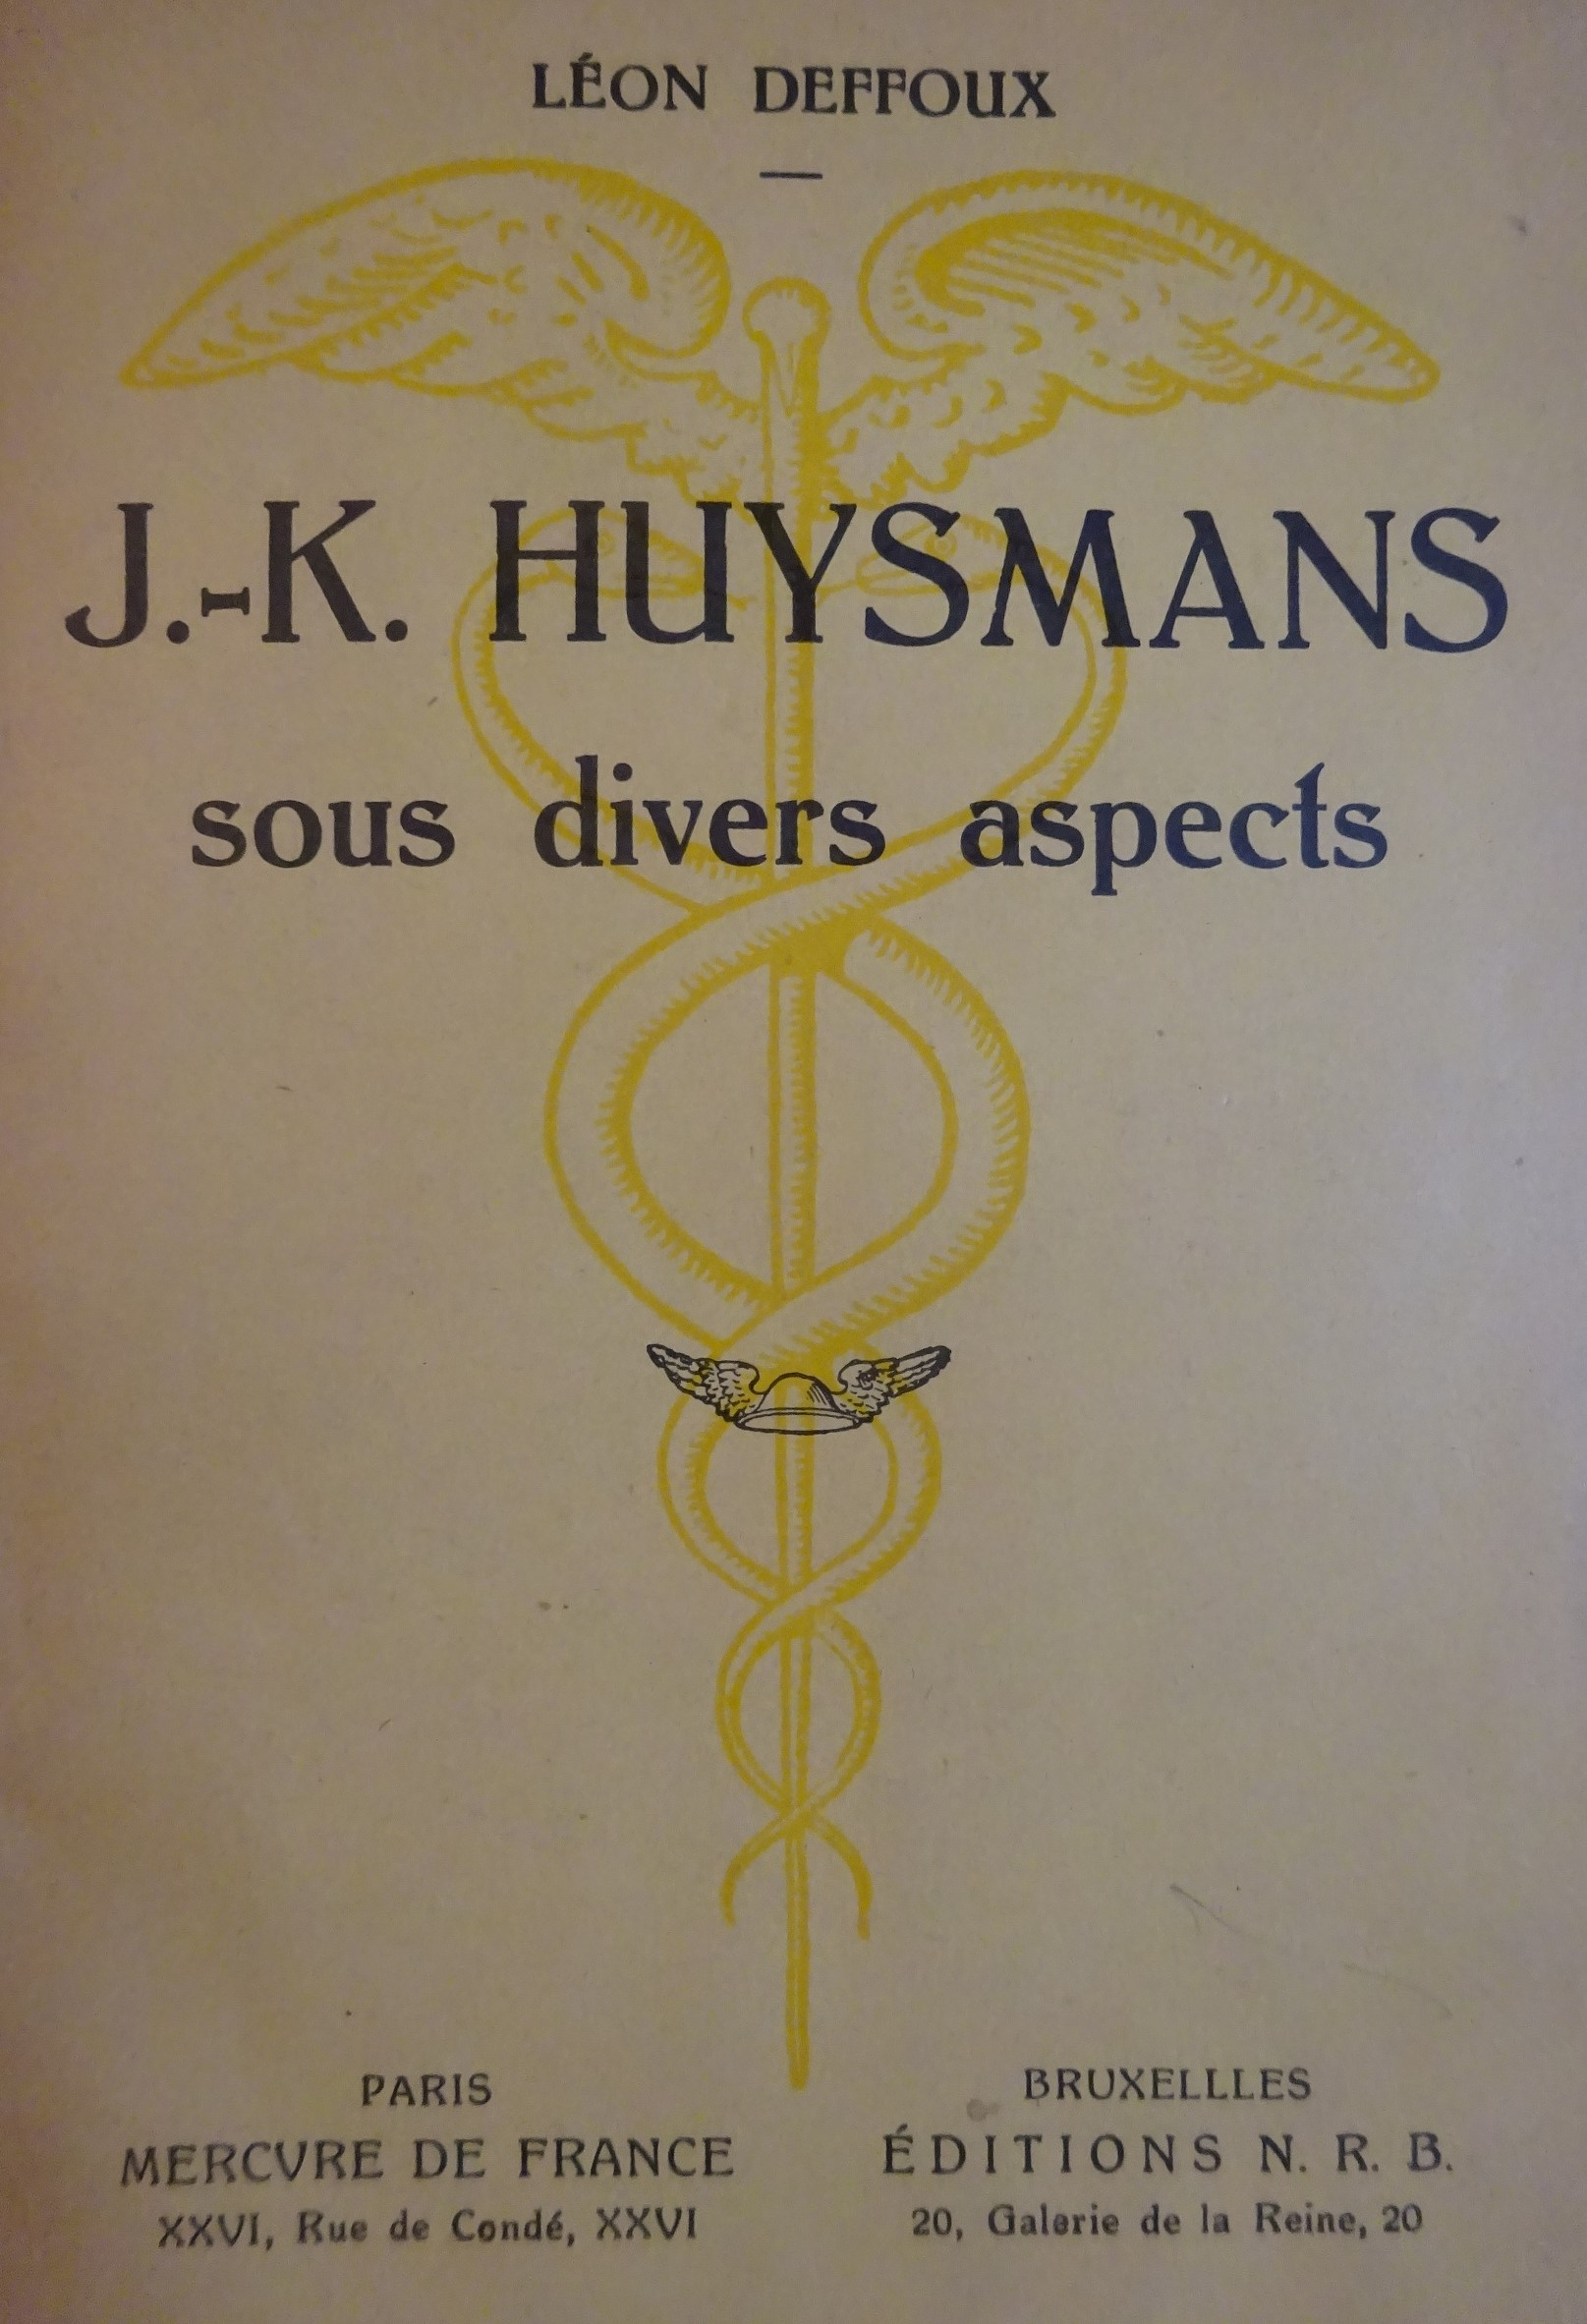 J.-K.Huysmans sous divers aspects